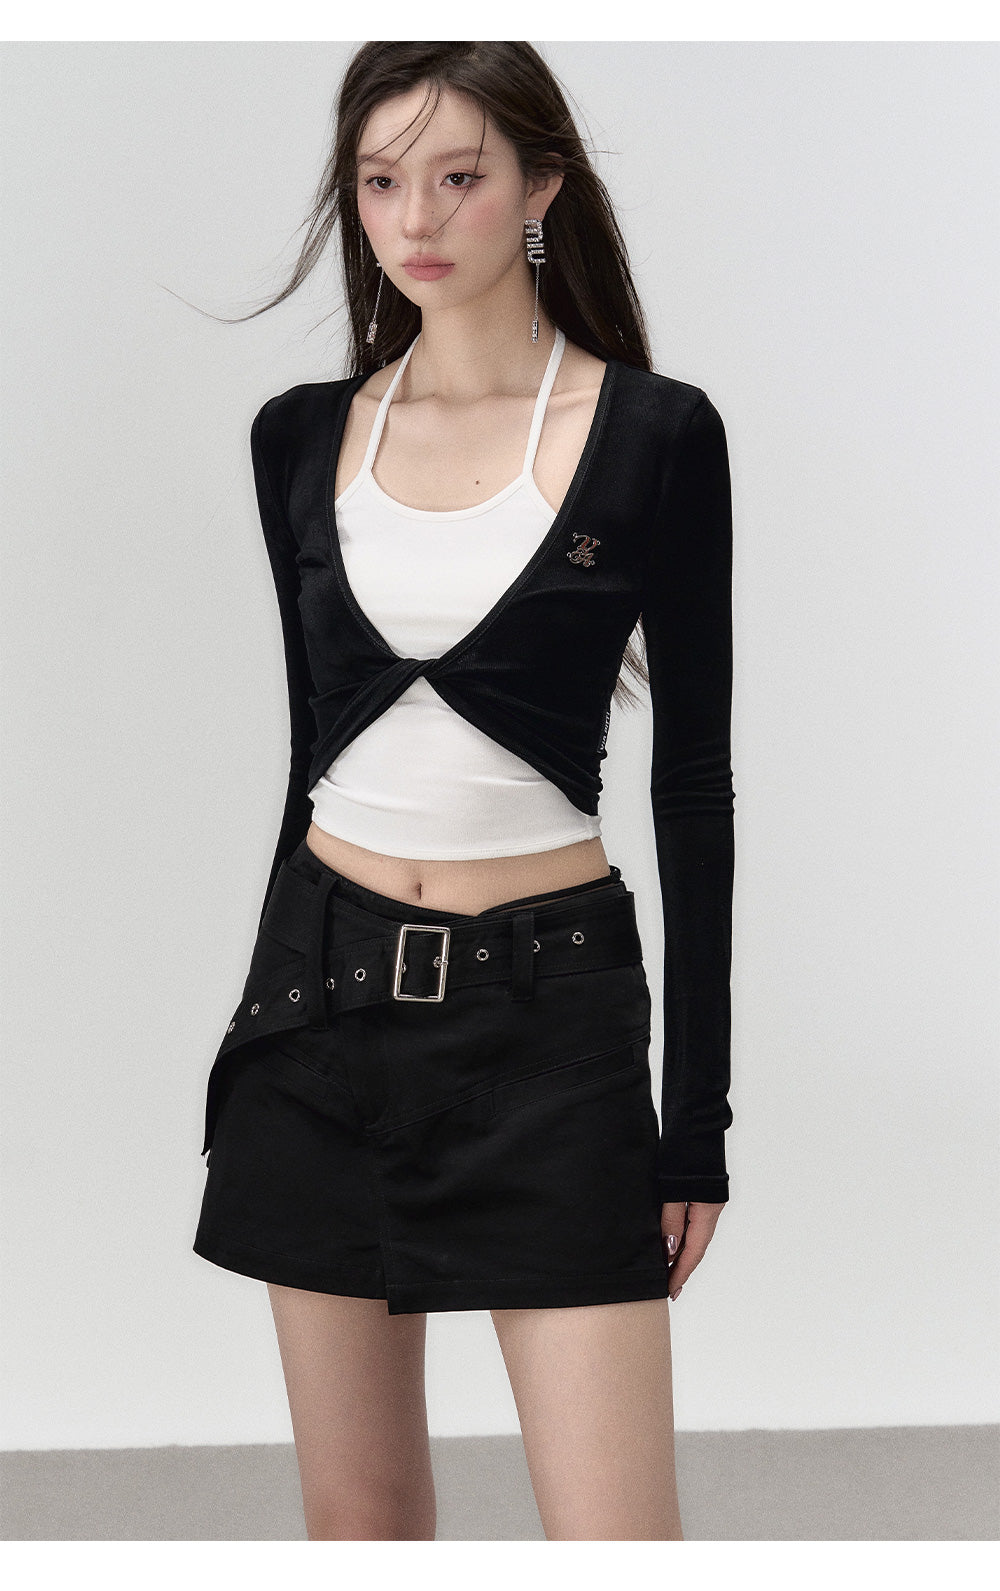 Black A-line Waistbelt Mini Skirt - CHINASQUAD